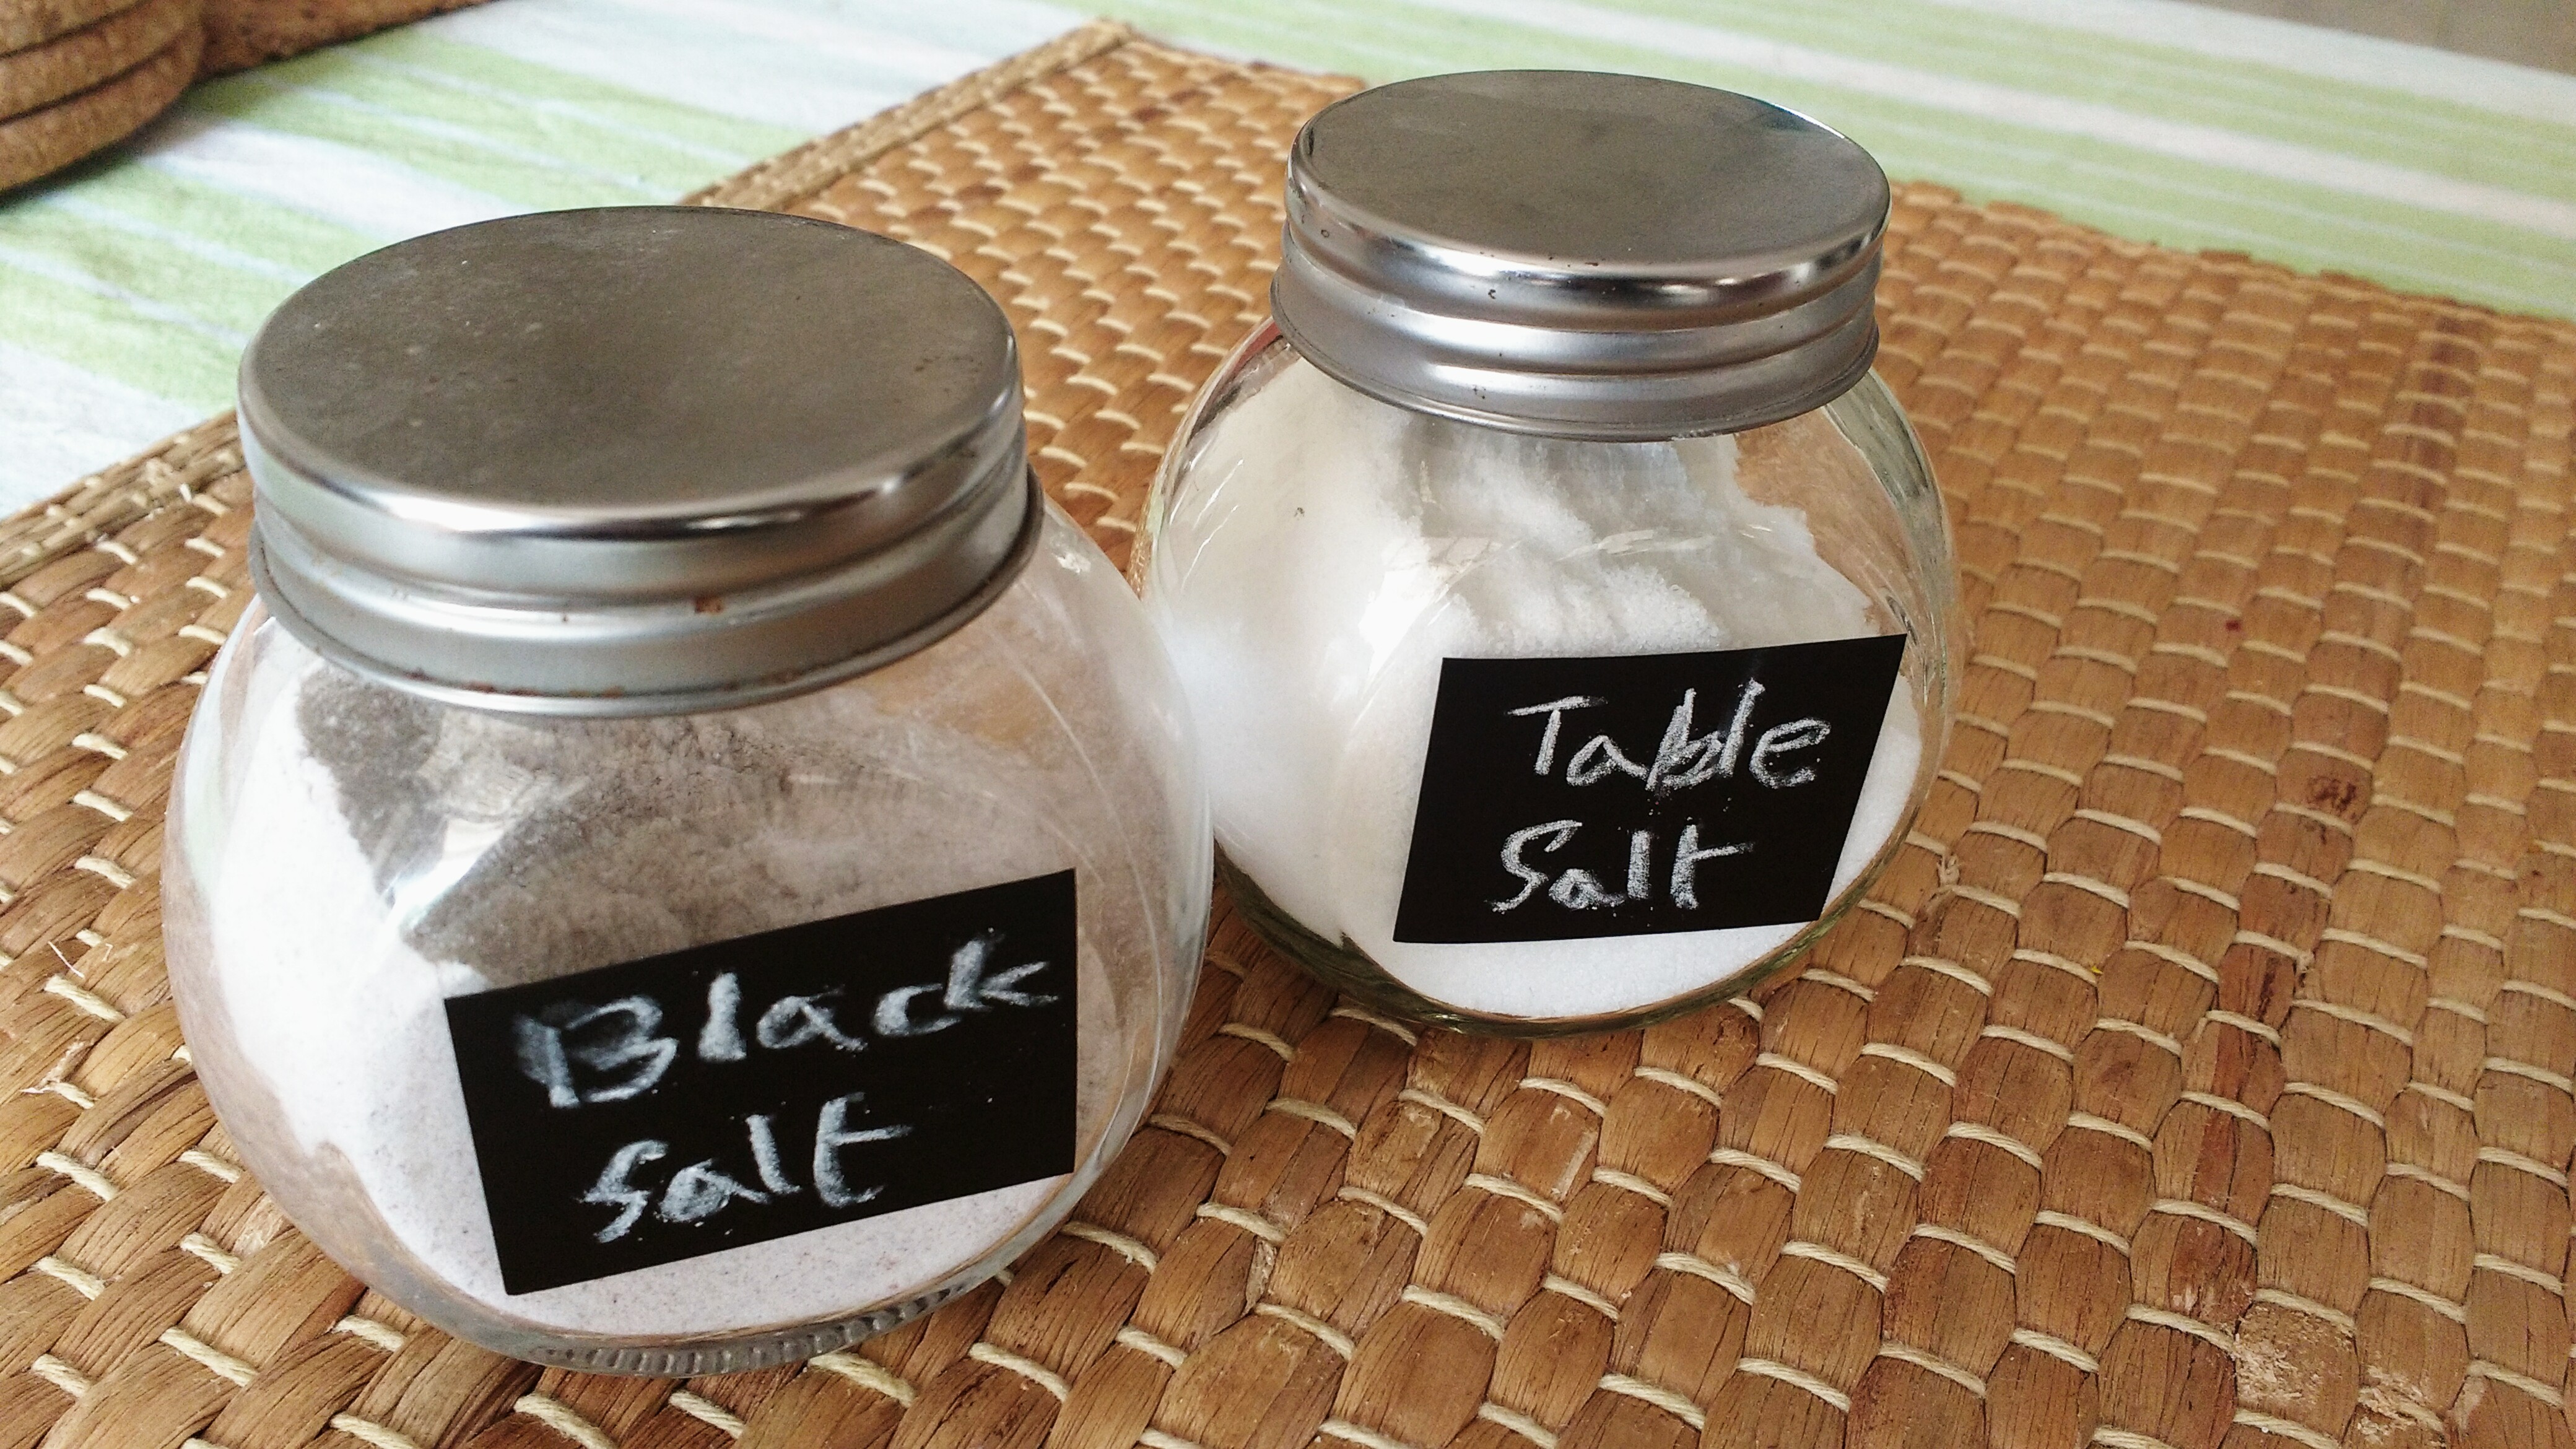 Black salt vs table salt